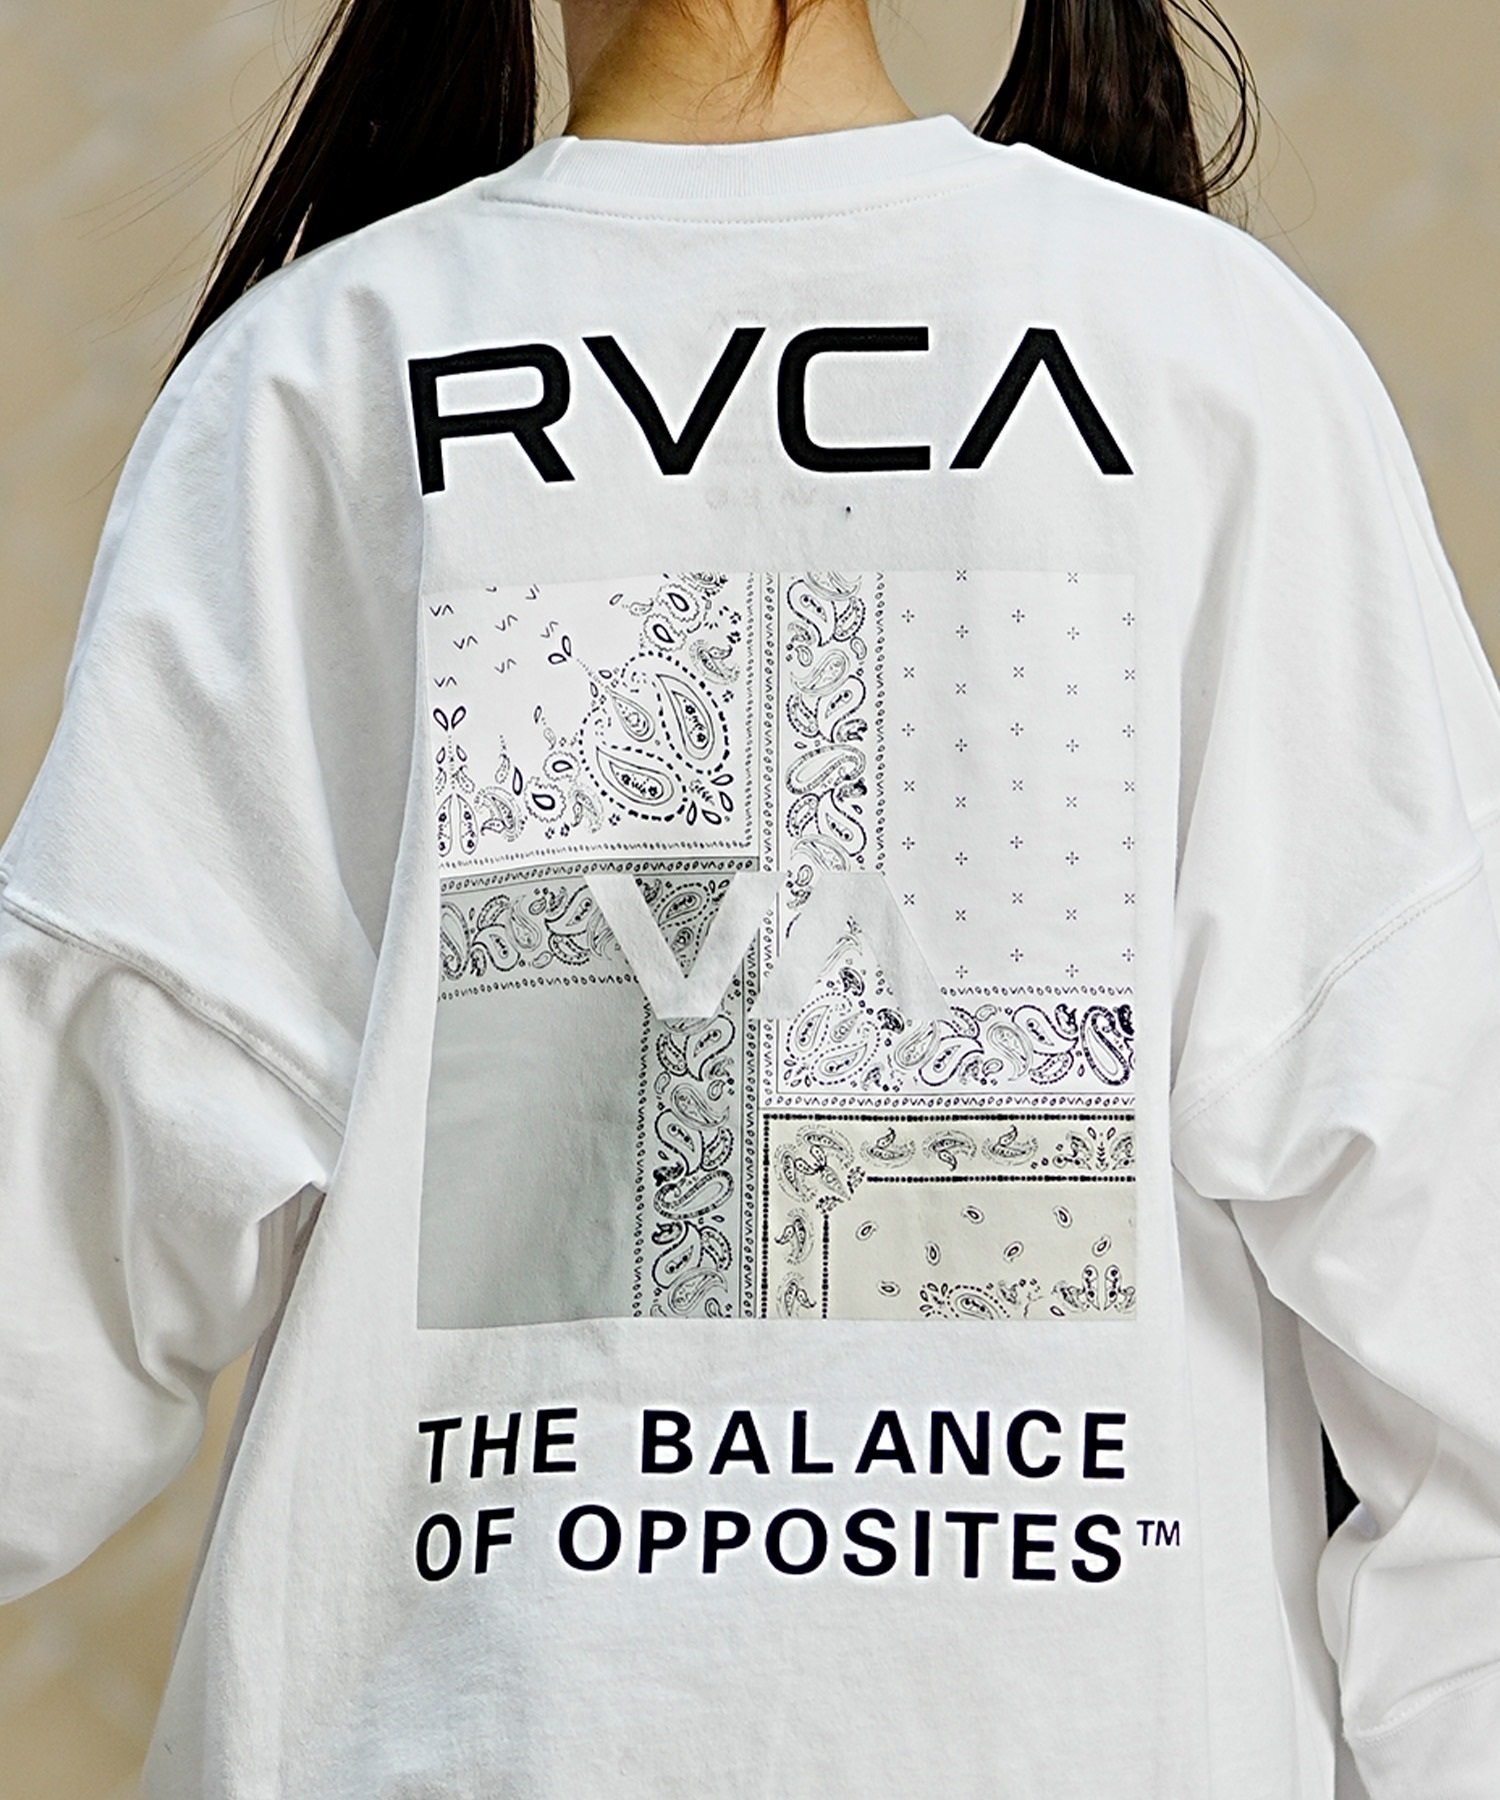 【クーポン対象】RVCA ルーカ キッズ ロングTシャツ ロンT バンダナ柄 130cm?160cm BE045-058(BLK-130cm)